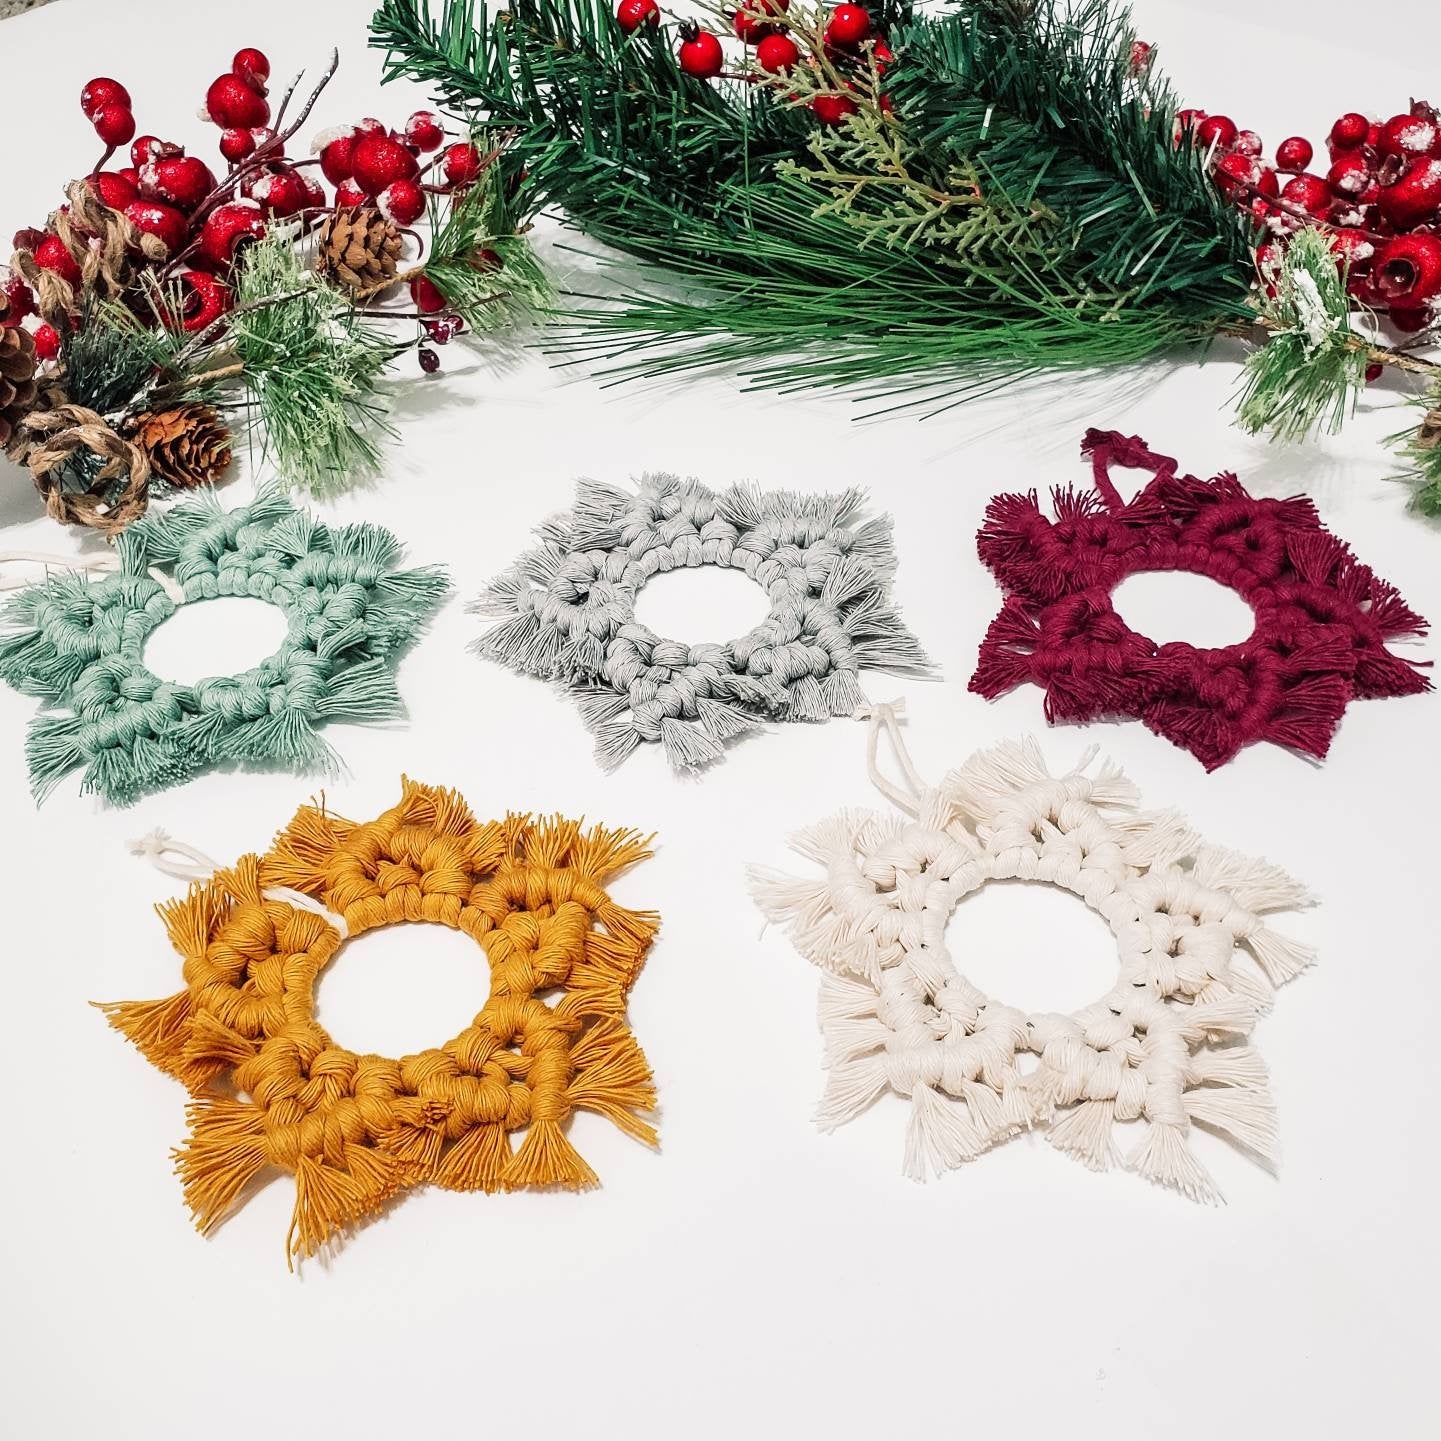 DIY Christmas ornament kit. Macrame christmas ornament set. Christmas craft kits for adults and kids. Macrame star. Christmas home decor diy